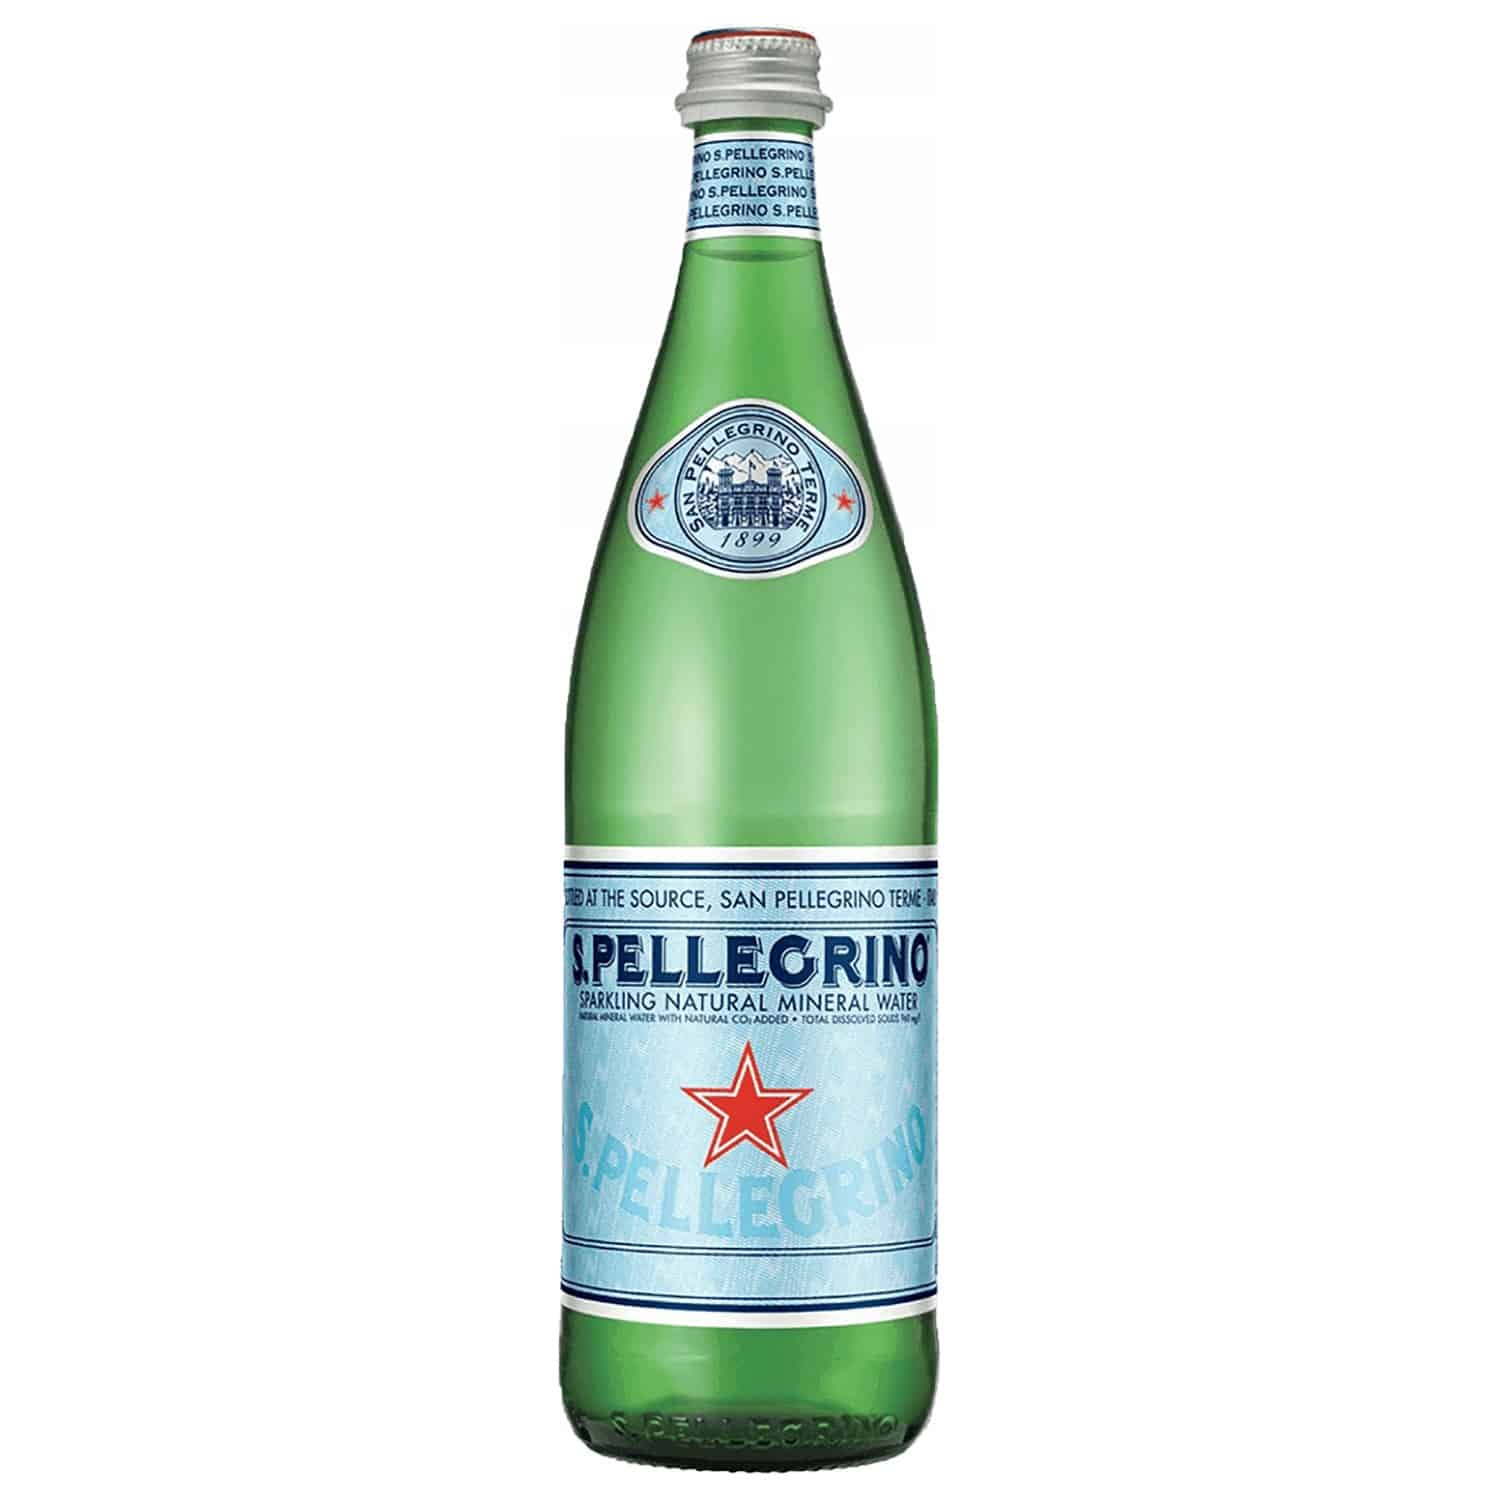 woda san pellegrino 0,75 w szklanej butelce szkło